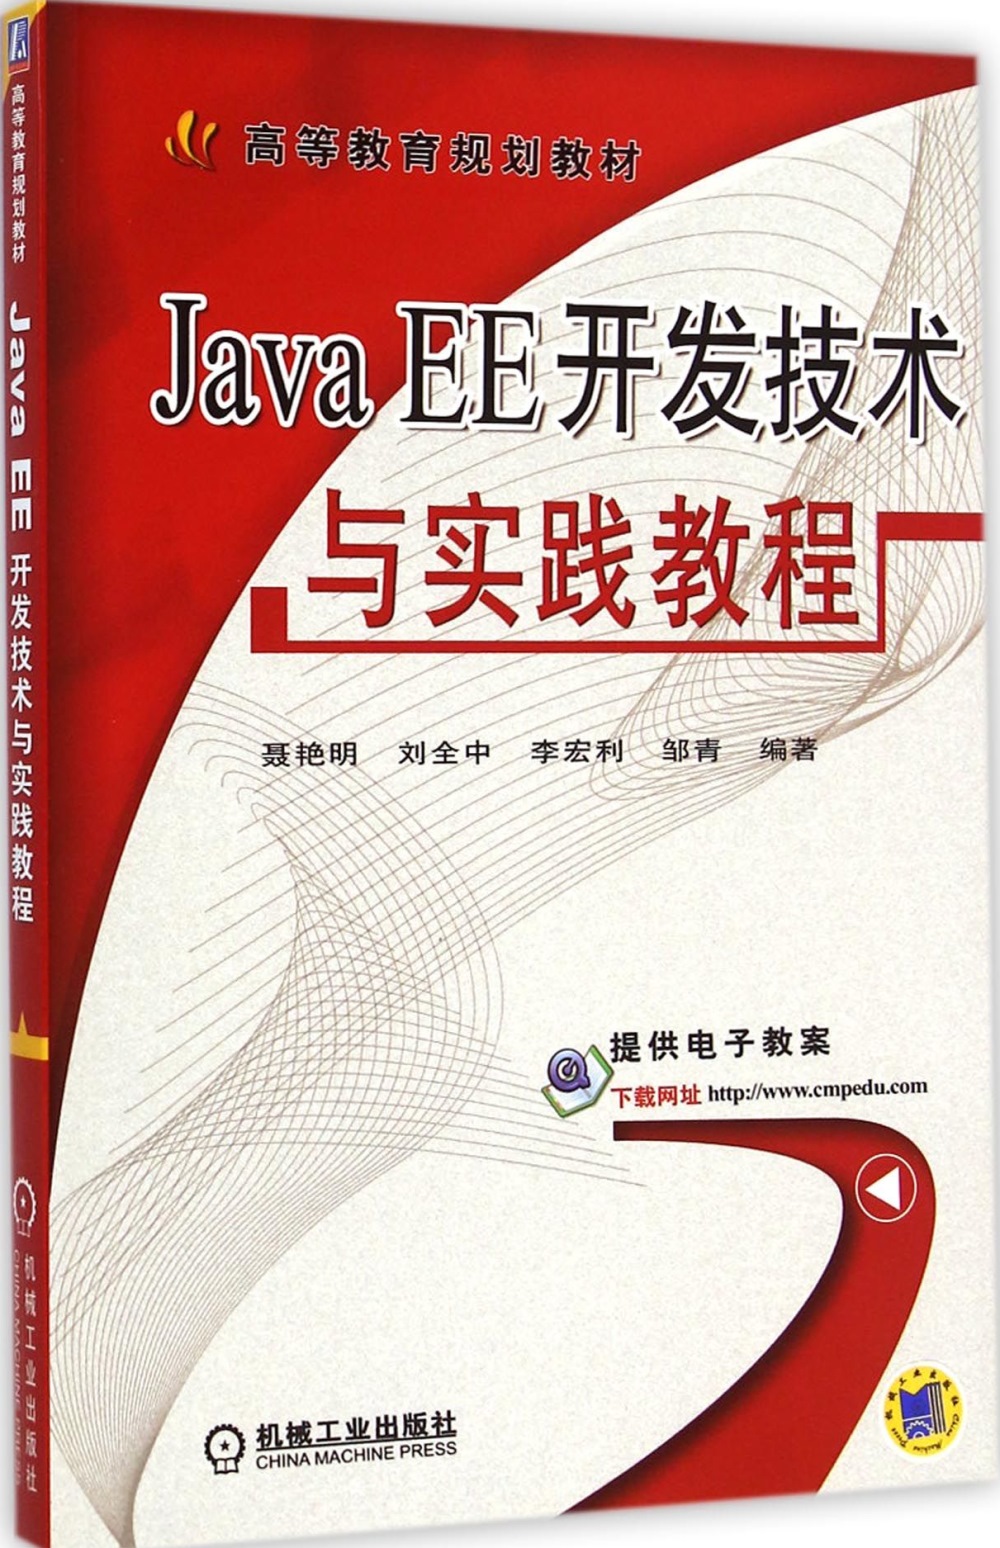 Java EE開發技術與實踐教程